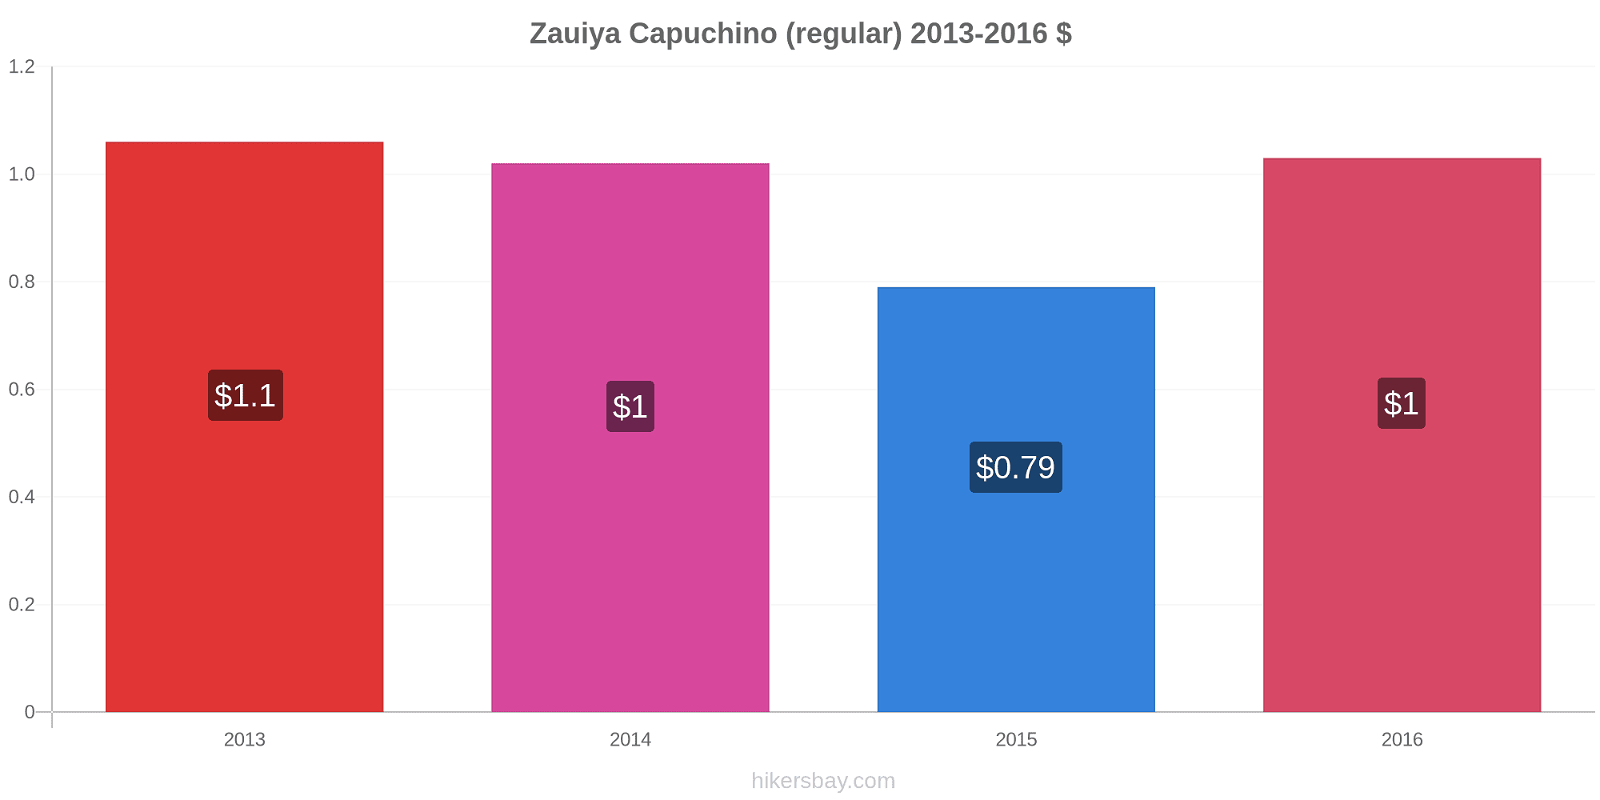 Zauiya cambios de precios Capuchino (regular) hikersbay.com